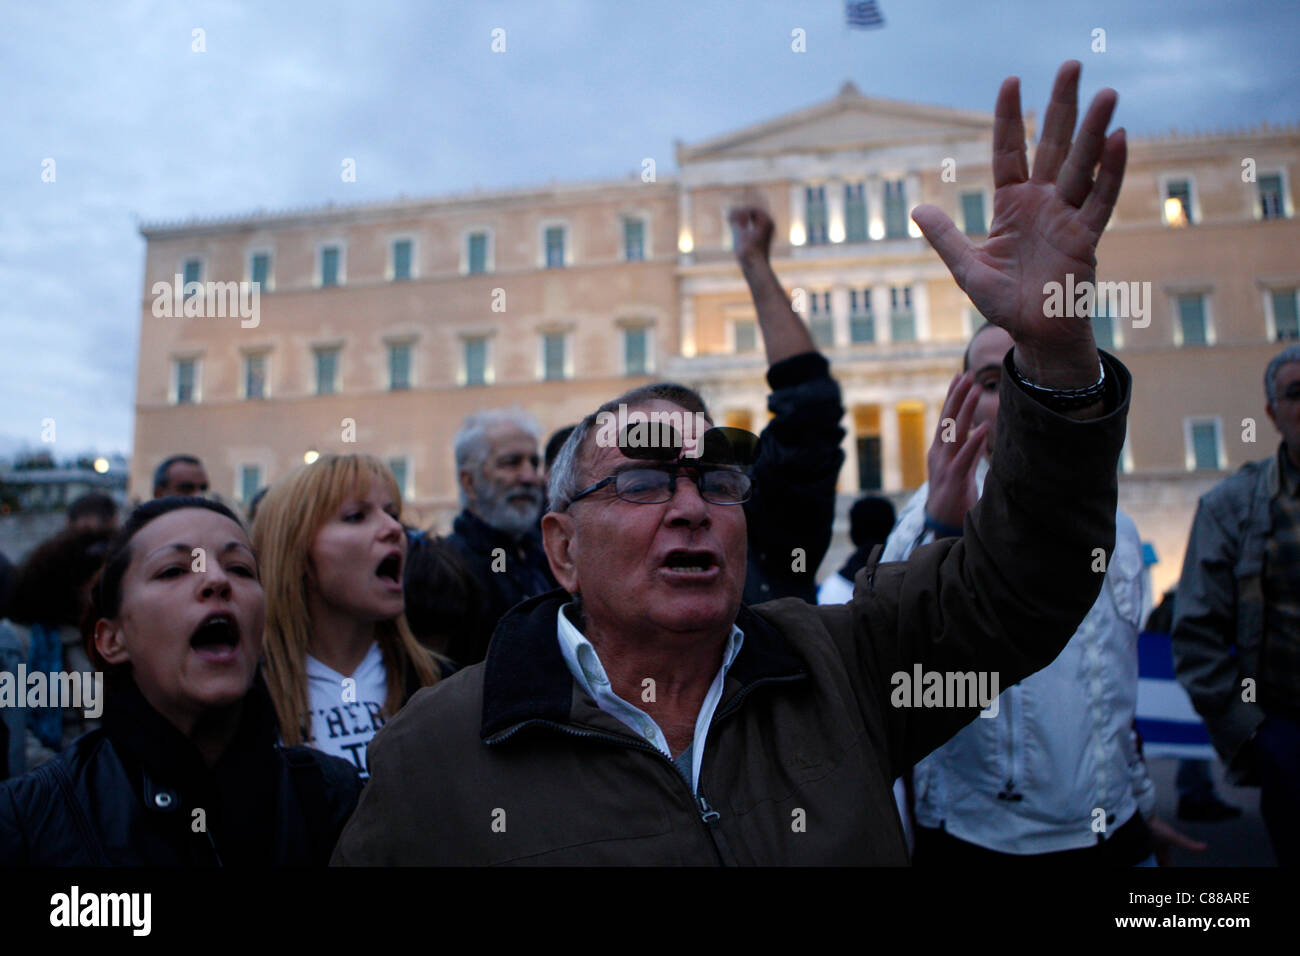 15 octobre 2011, Athènes, Grèce. Peuple grec protester contre le nouveau plan d'austérité devant le parlement grec. De l'Amérique à l'Asie, de l'Afrique à l'Europe, les gens se mobilisent pour réclamer leurs droits et exiger une vraie démocratie. Banque D'Images